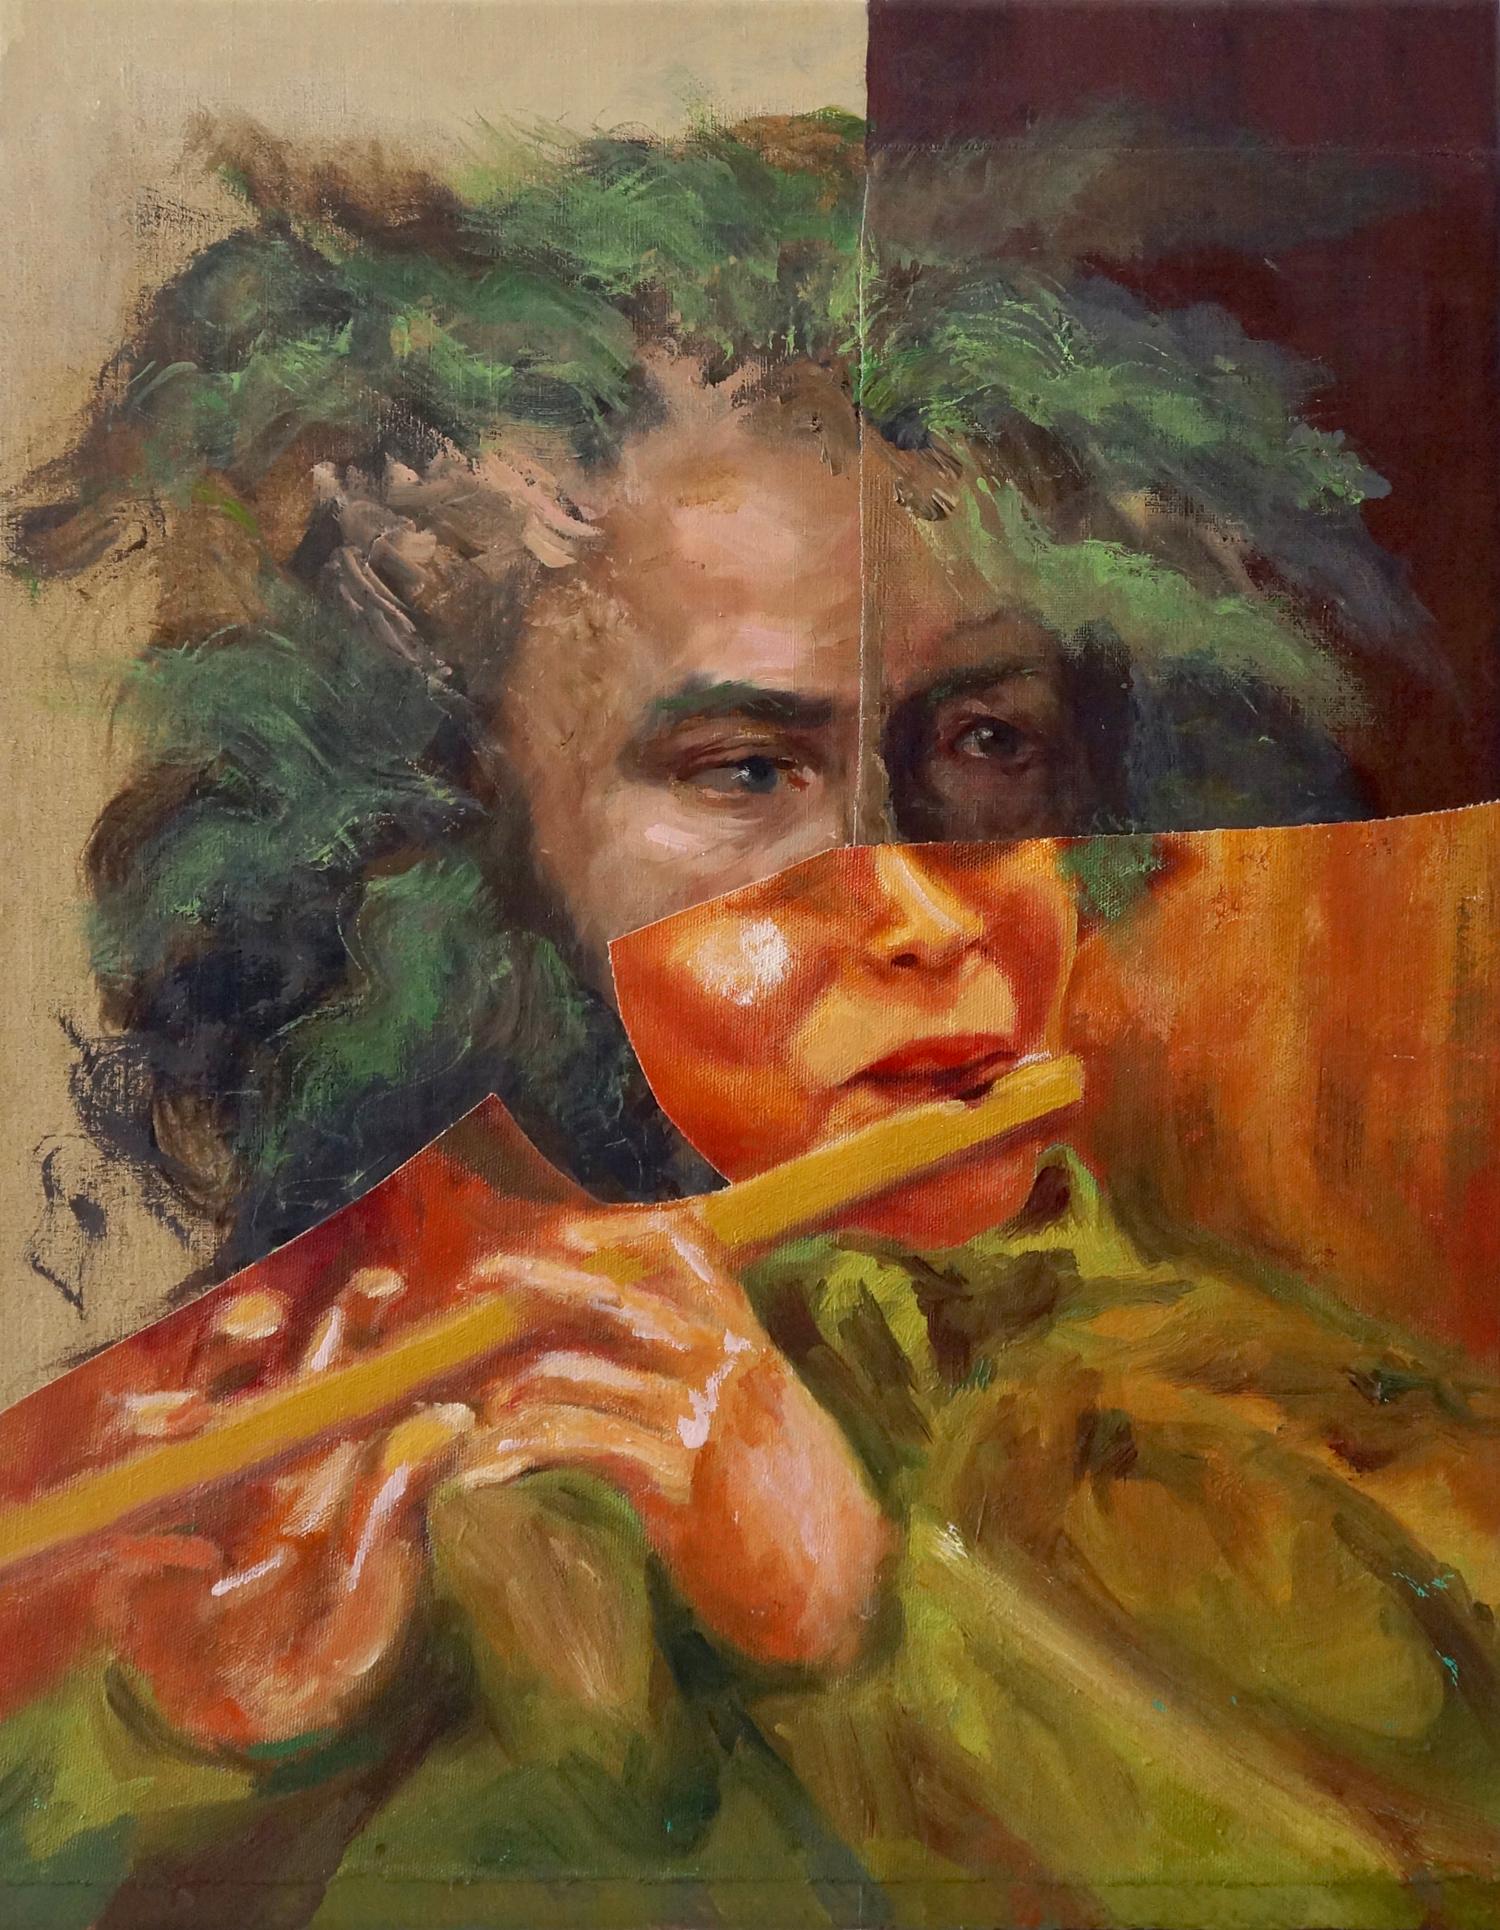 Portrait Painting John Baker - "« Joueur de flûte », acrylique, peinture, collage, portrait, musique, orange, vert